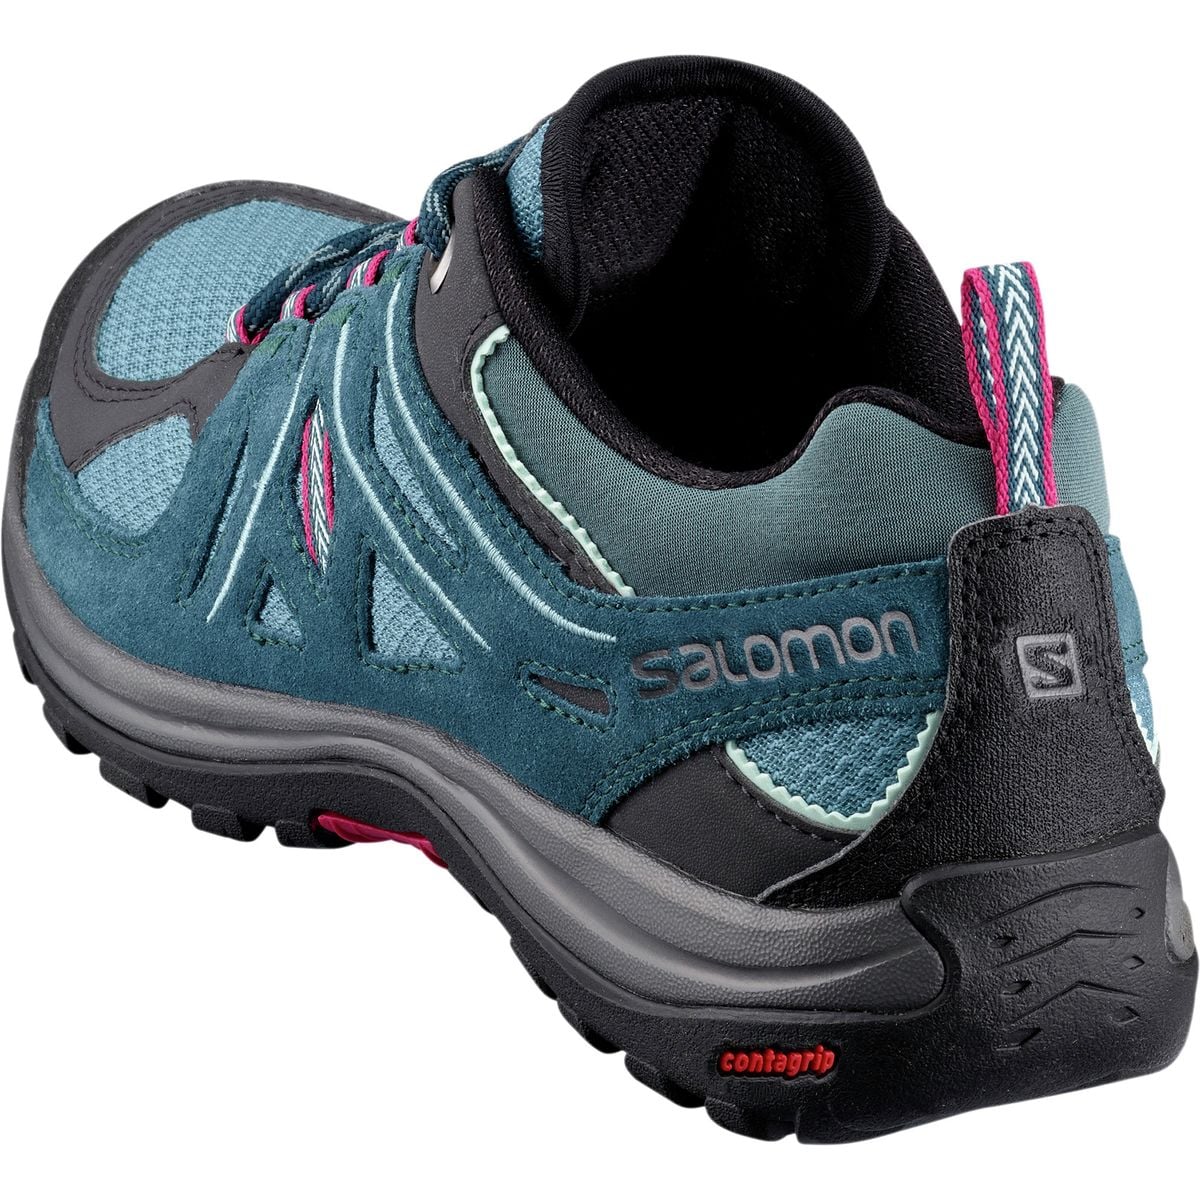 Salomon Ellipse 2 Aero Hiking Shoe - Women's - Footwear